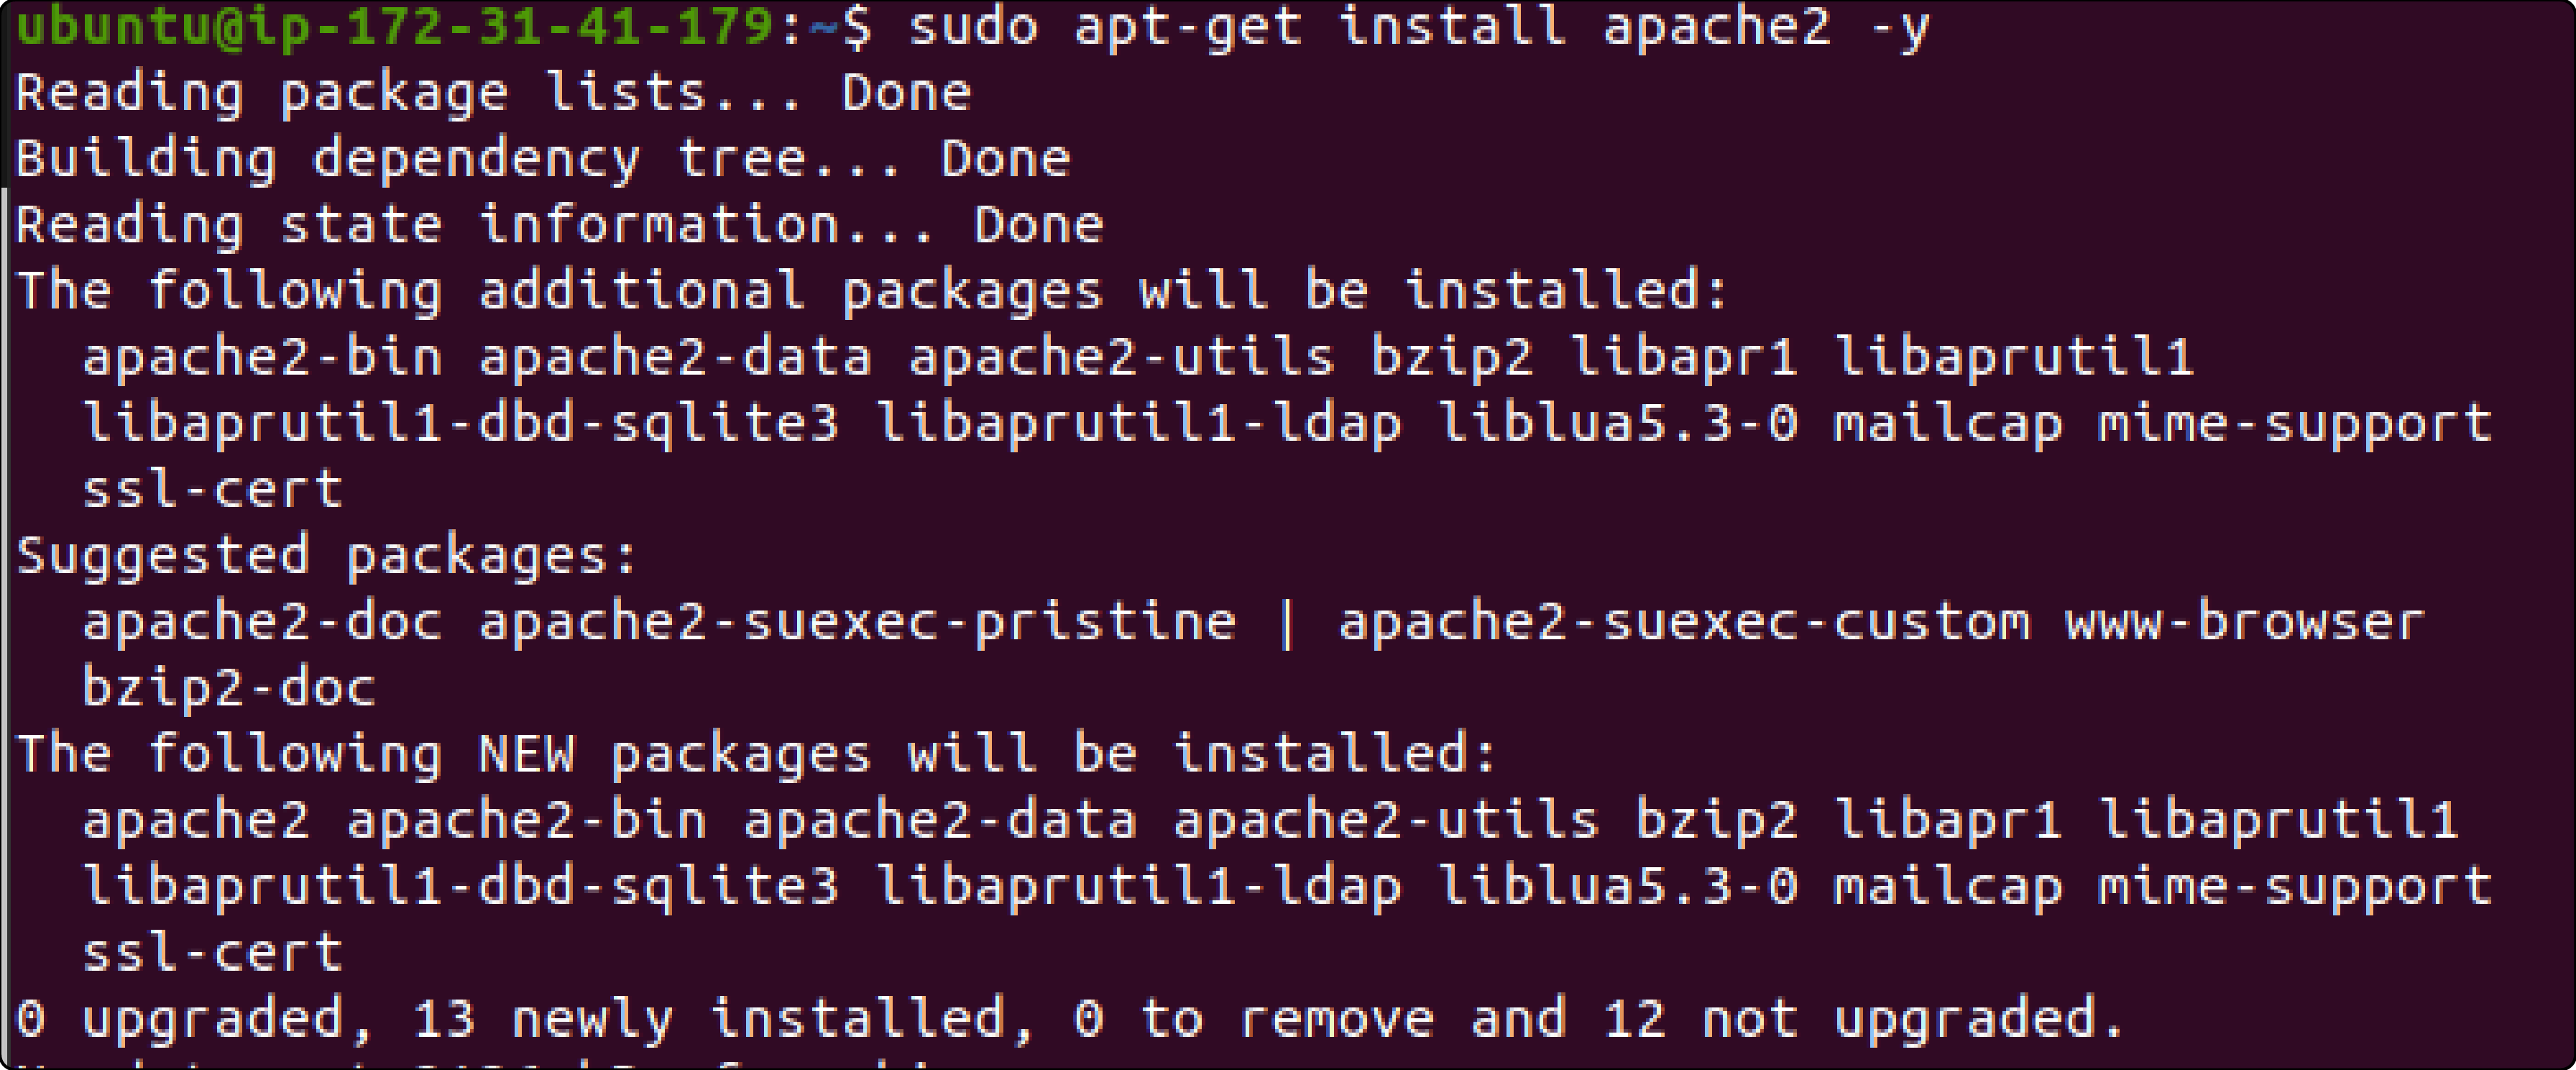 Step 1-Install Apache2
